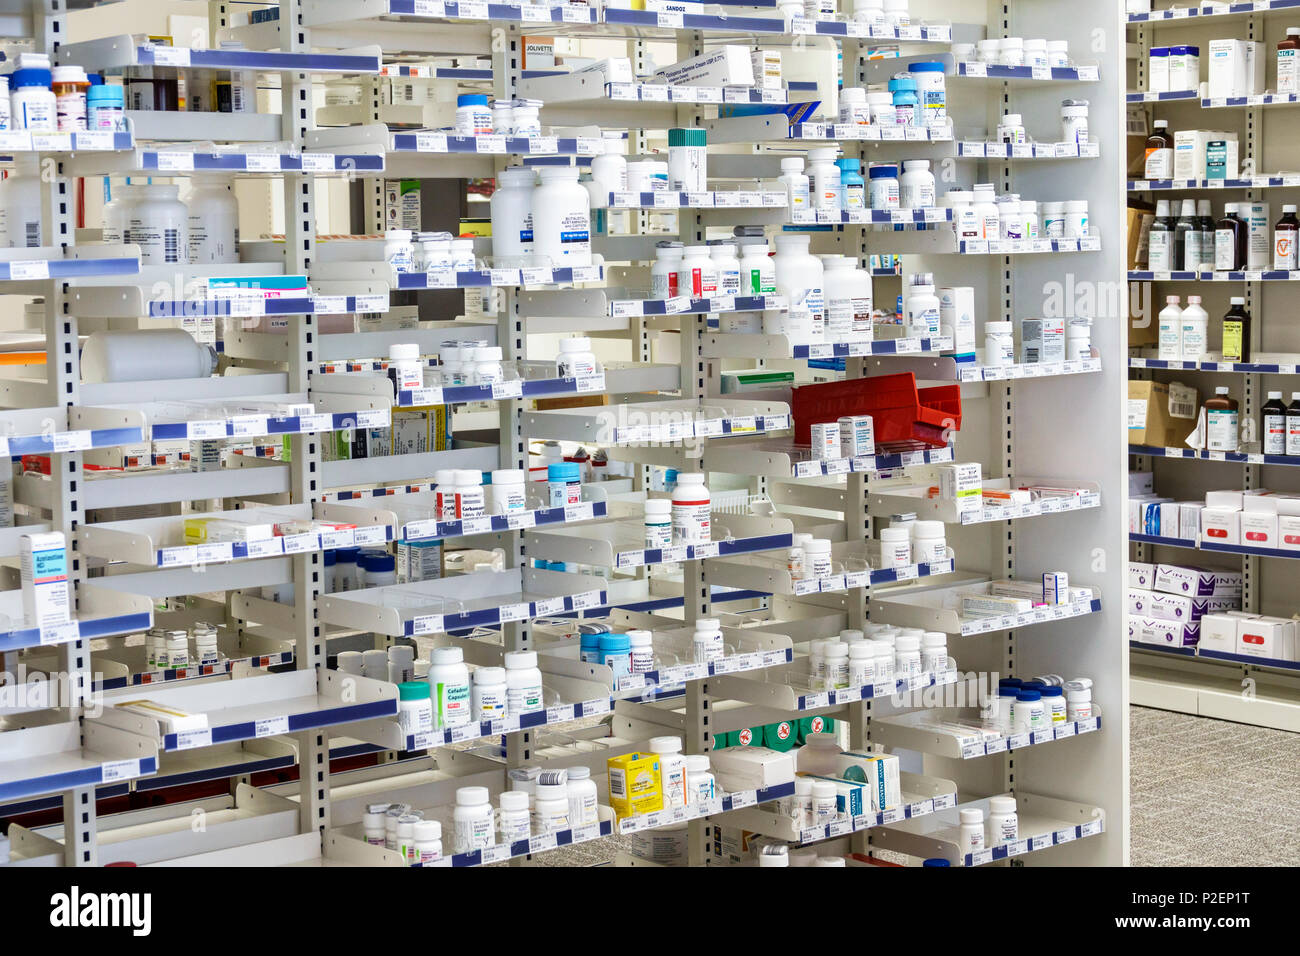 Miami Florida,Walgreens,farmacia droguería,estantes,medicamentos con receta,medicamentos farmacéuticos,Rx,FL170911001 Foto de stock